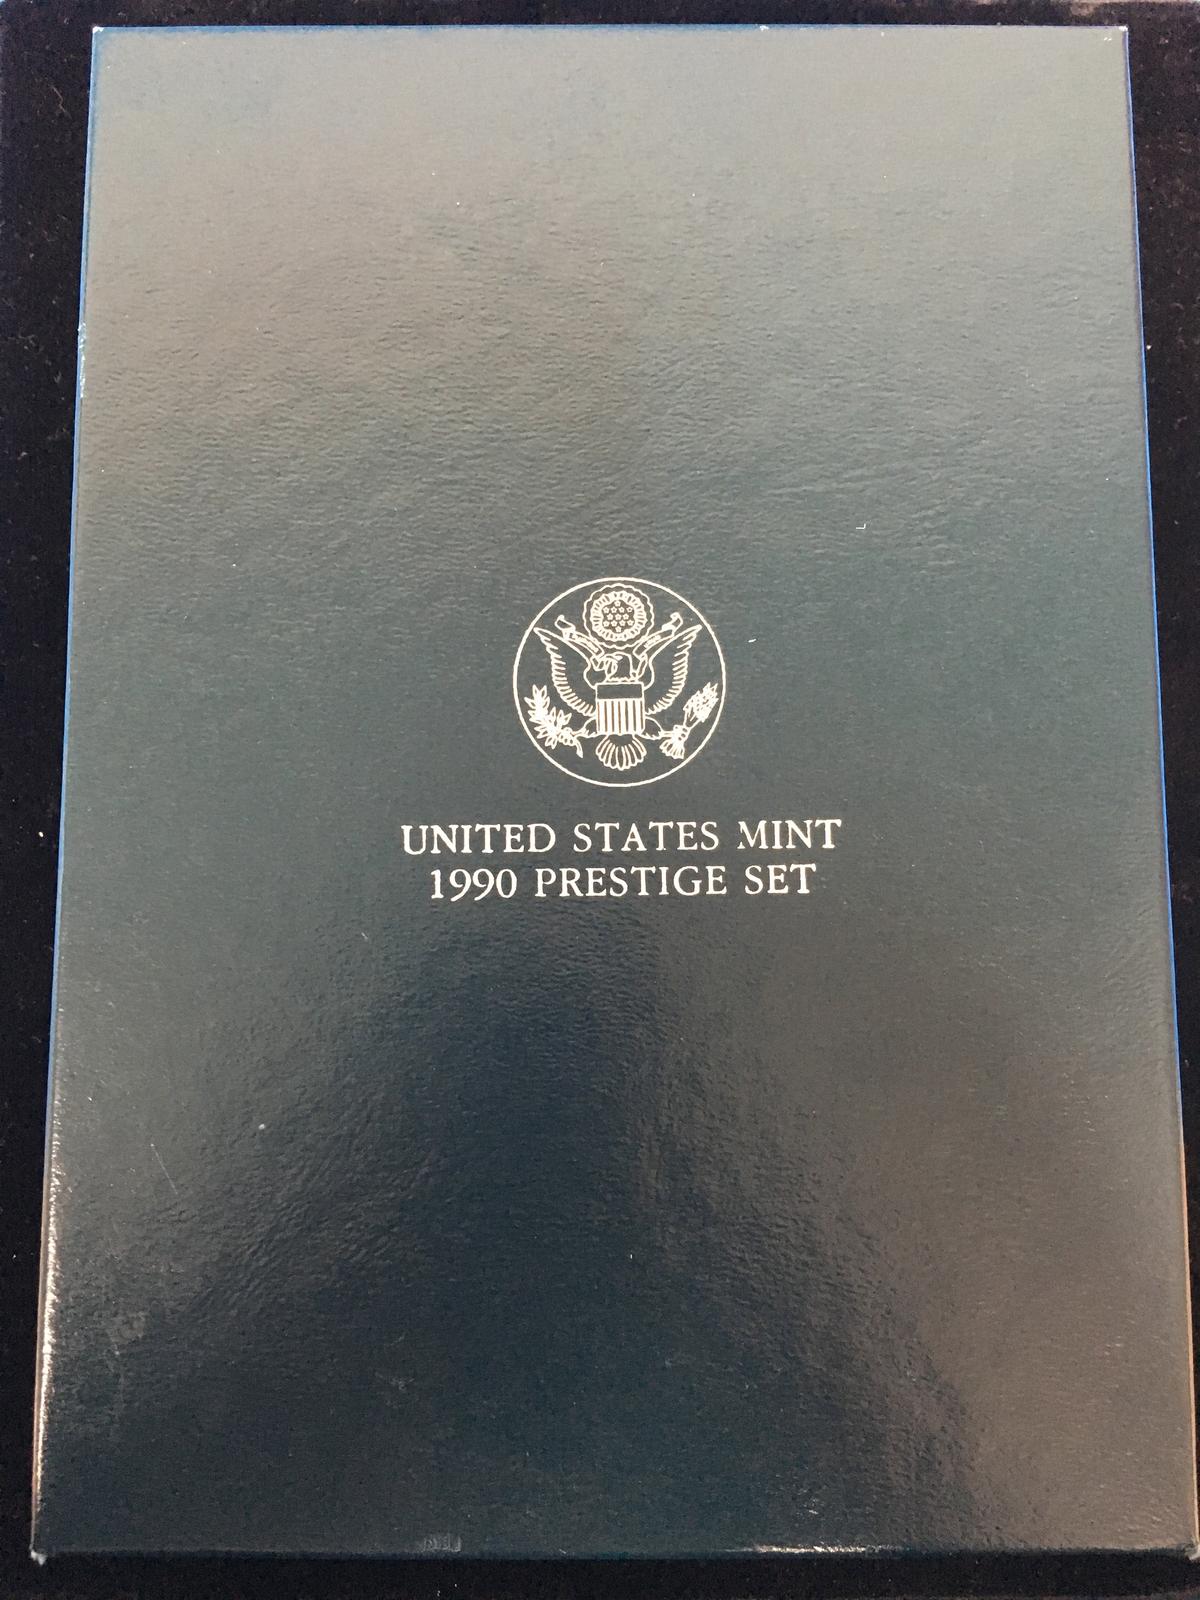 United States Mint 1990 Prestige Coin Set